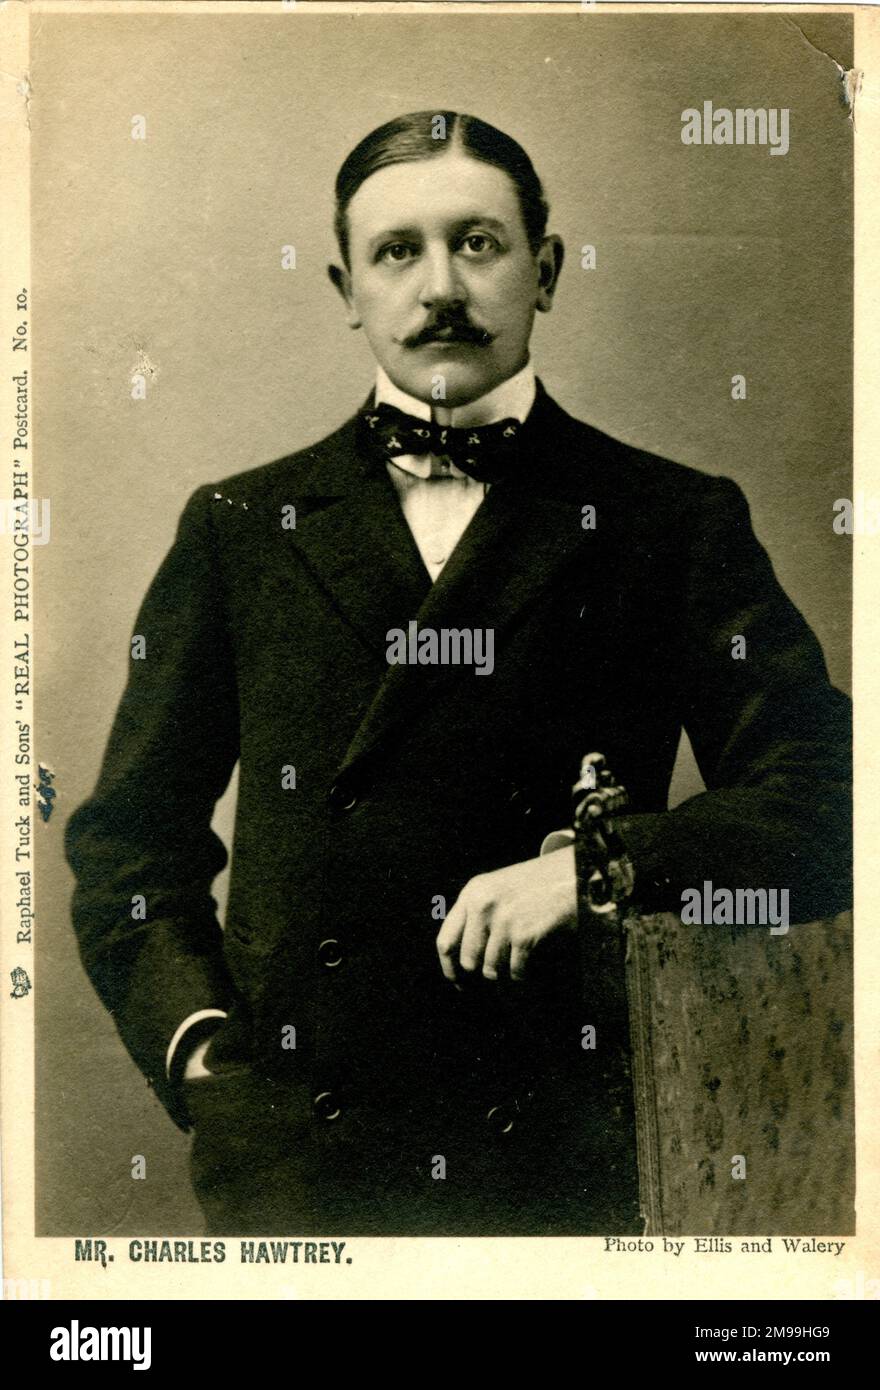 Charles Hawtrey (1858-1923), actor, director, productor y director teatral inglés. Foto de stock